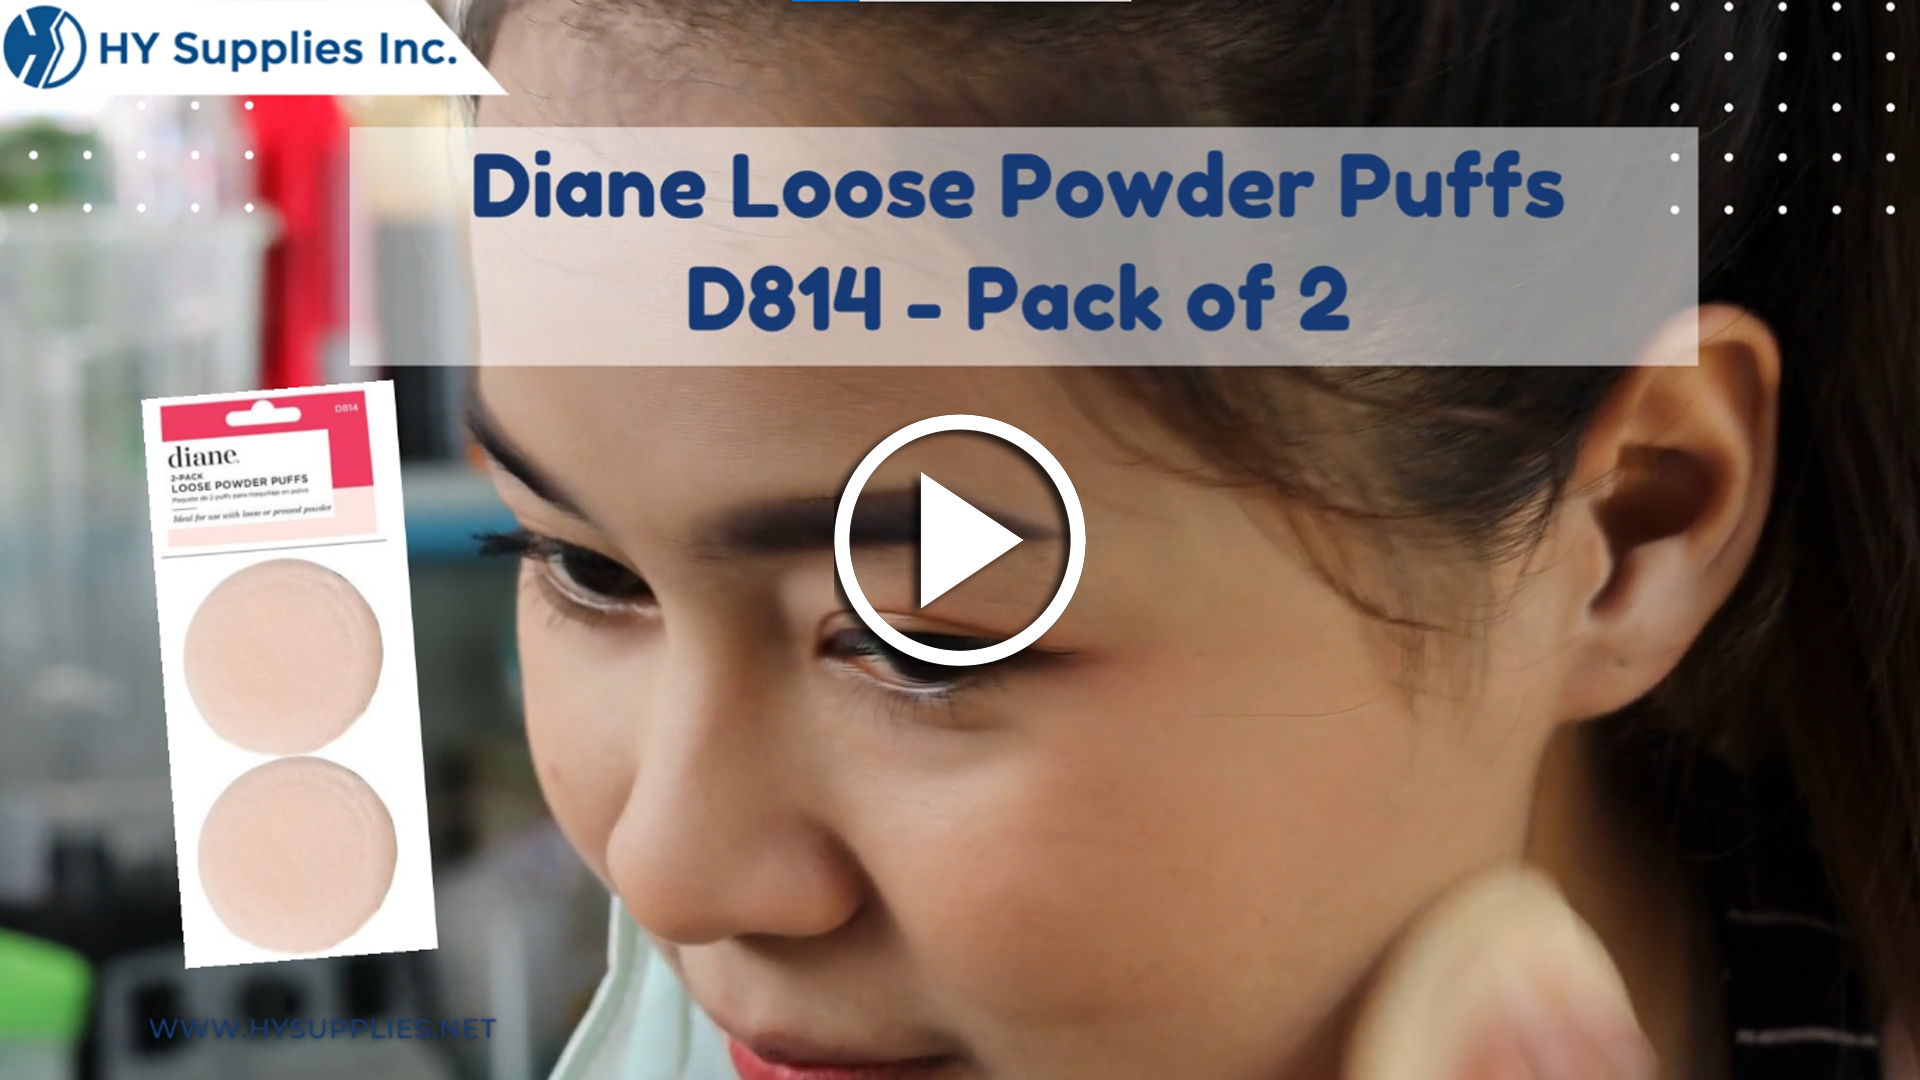 Diane Loose Powder Puffs D814 - Pack of 2